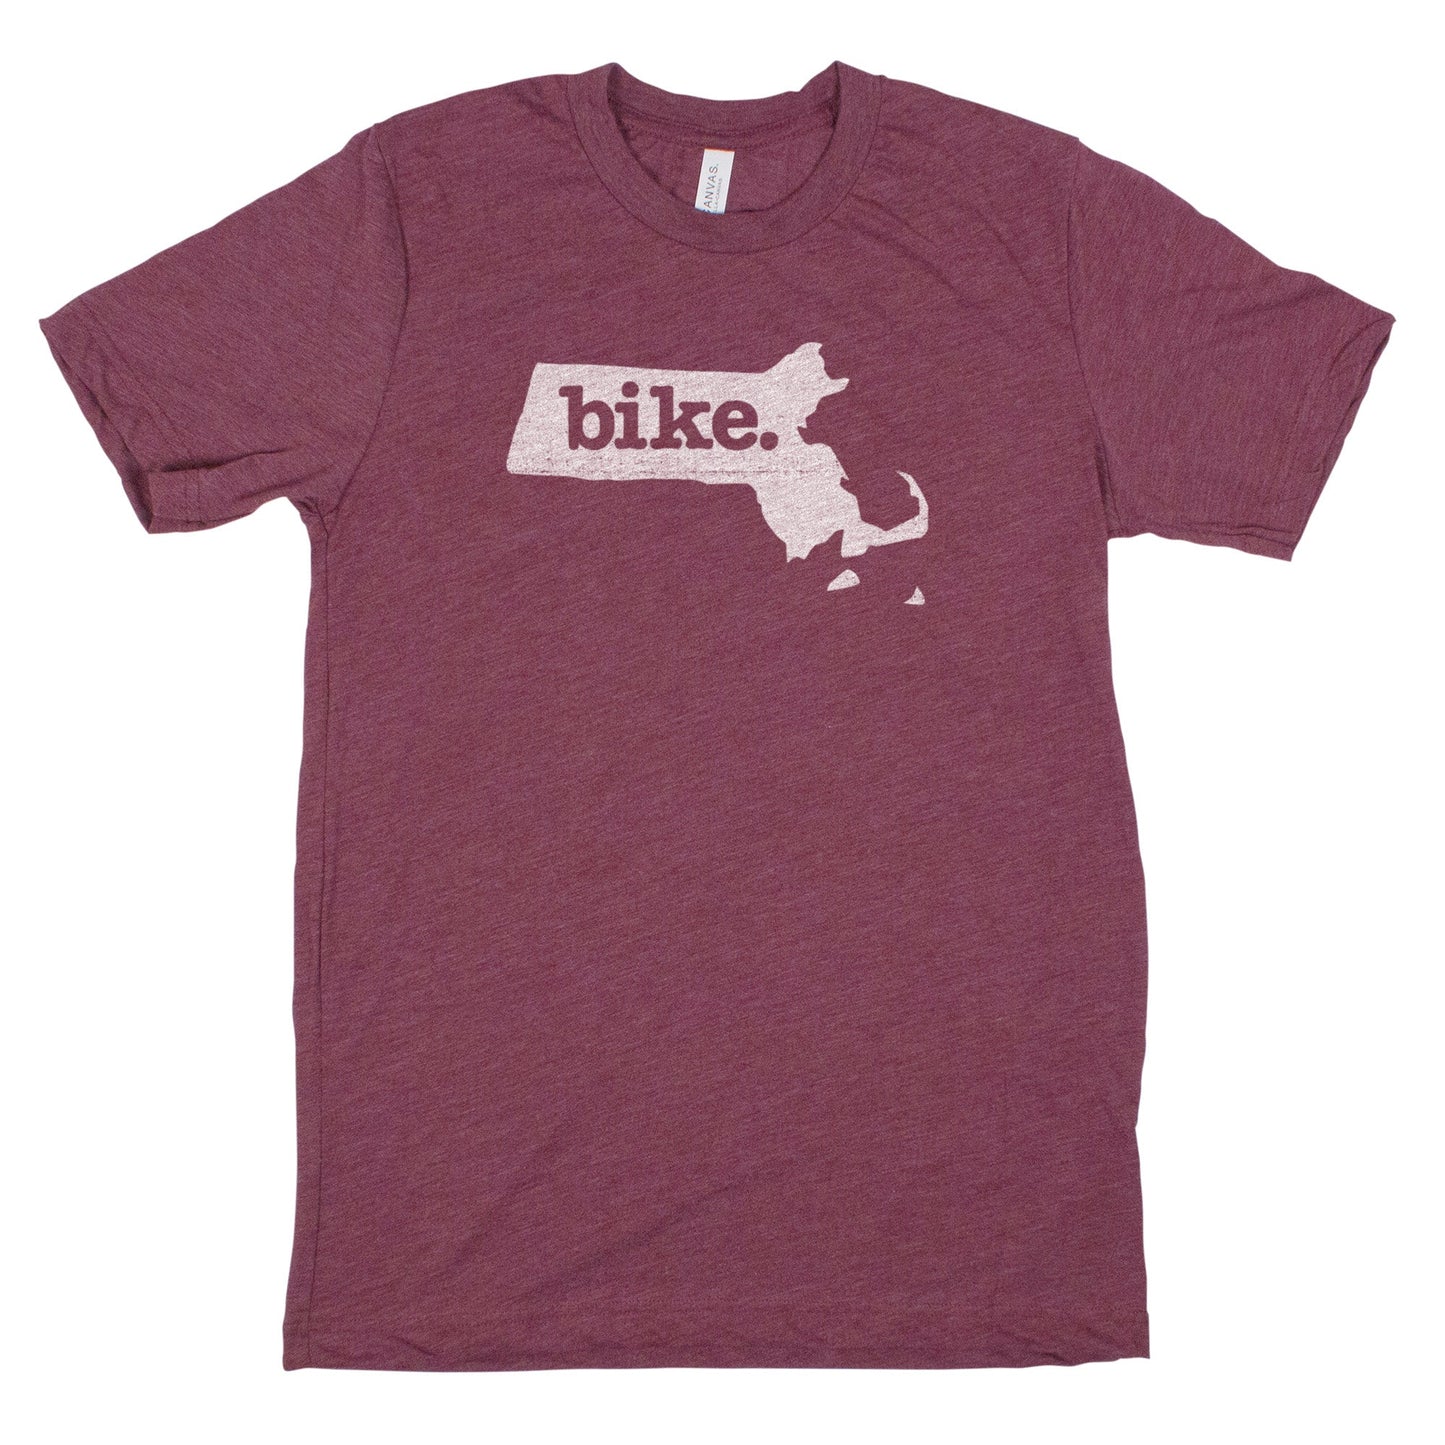 bike. Men's Unisex T-Shirt - Massachusetts